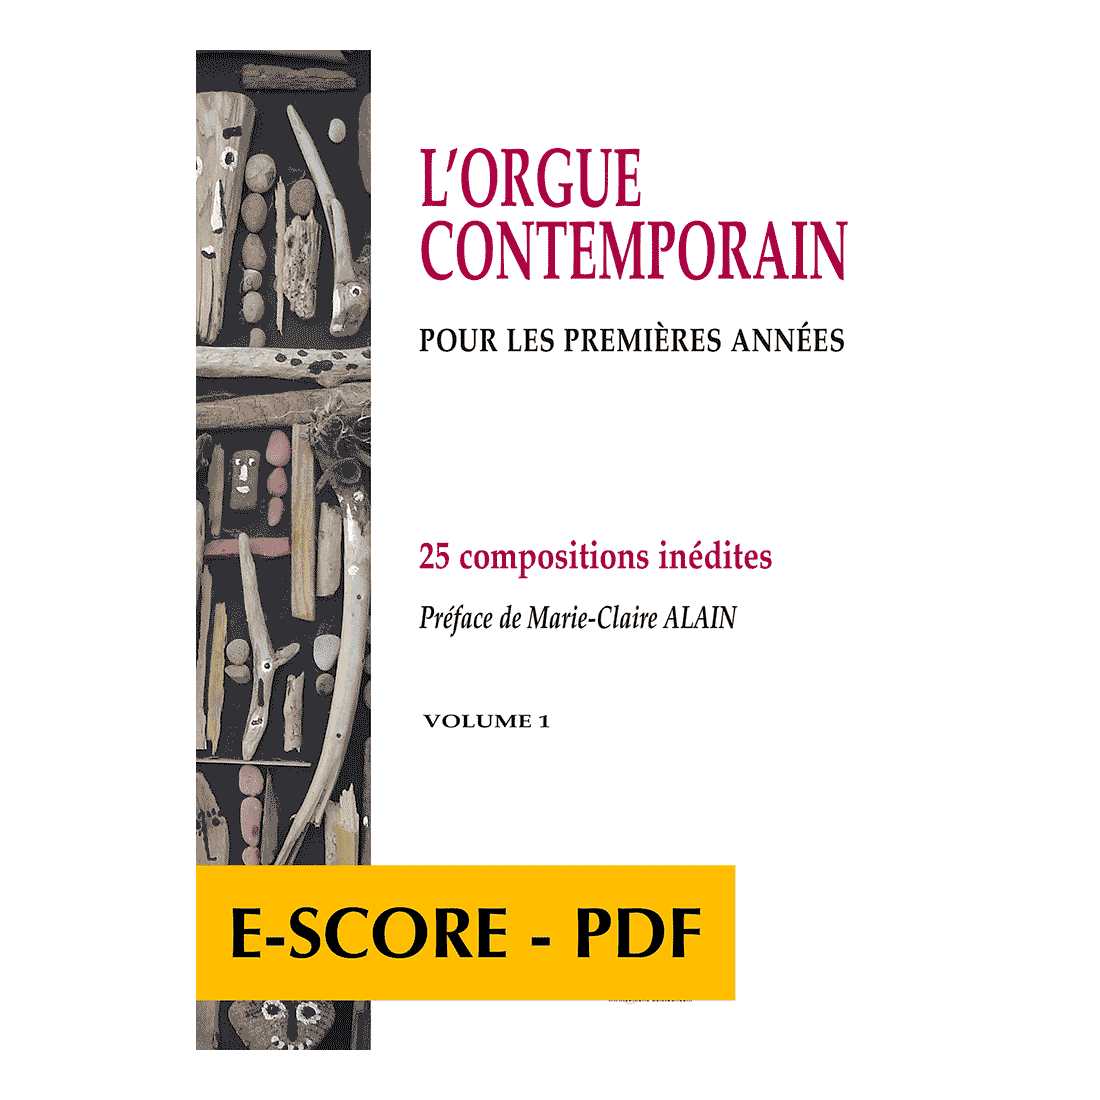 L'orgue contemporain pour les premières années - Volume 1 - E-score PDF